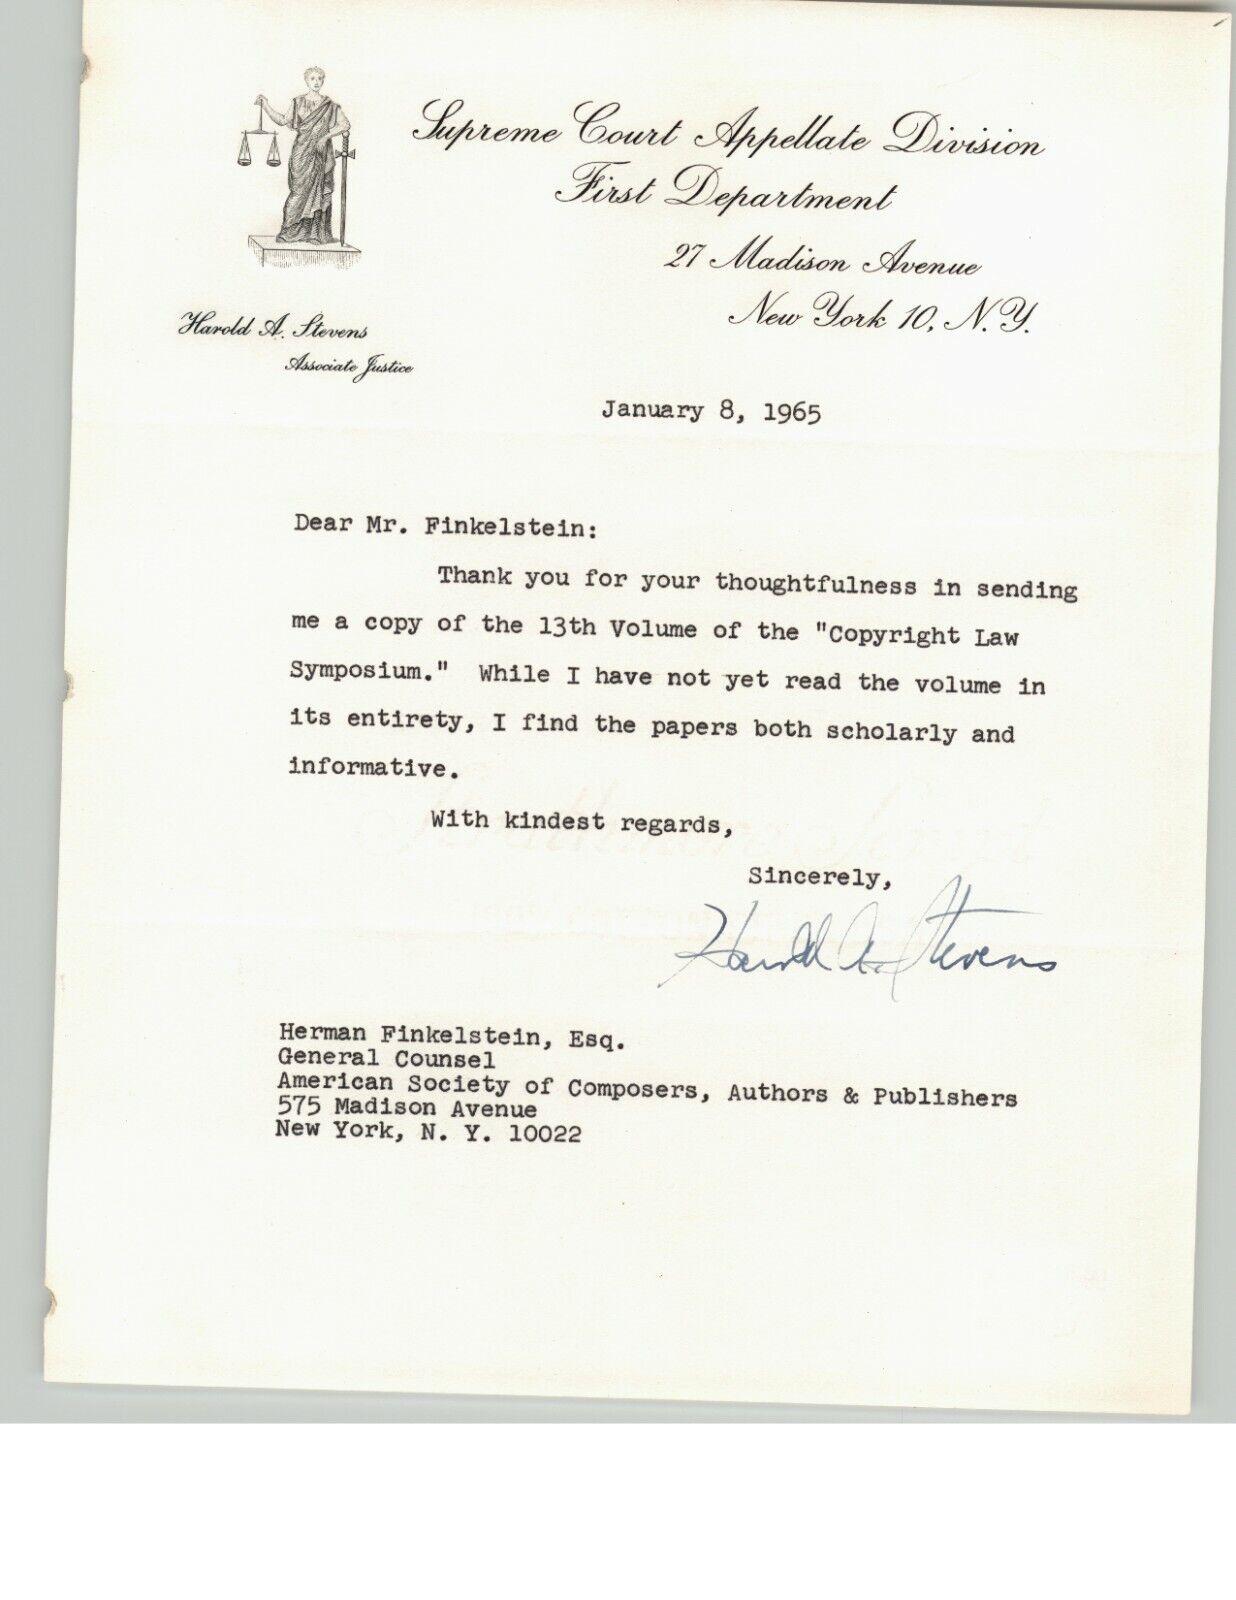 Judge Harold A Stevens Signed Herman Finkelstein Letter Supreme Court ASCAP 1965